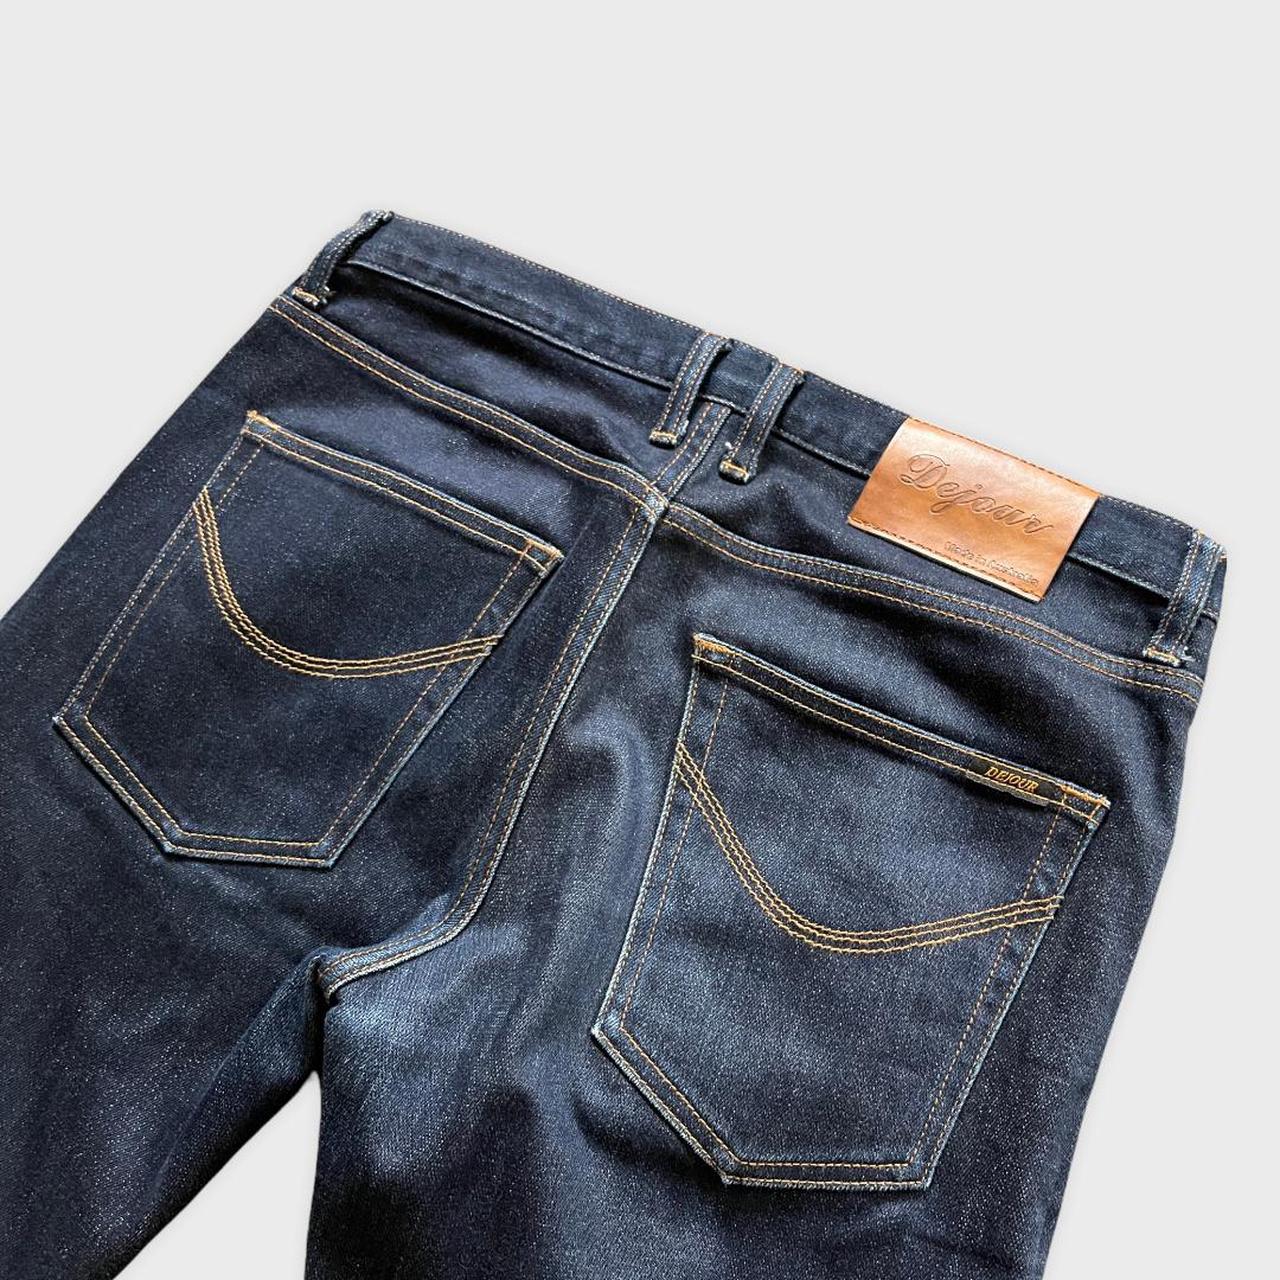 Dejour Indigo Denim Jeans Size: Men’s 31 Pants have... - Depop